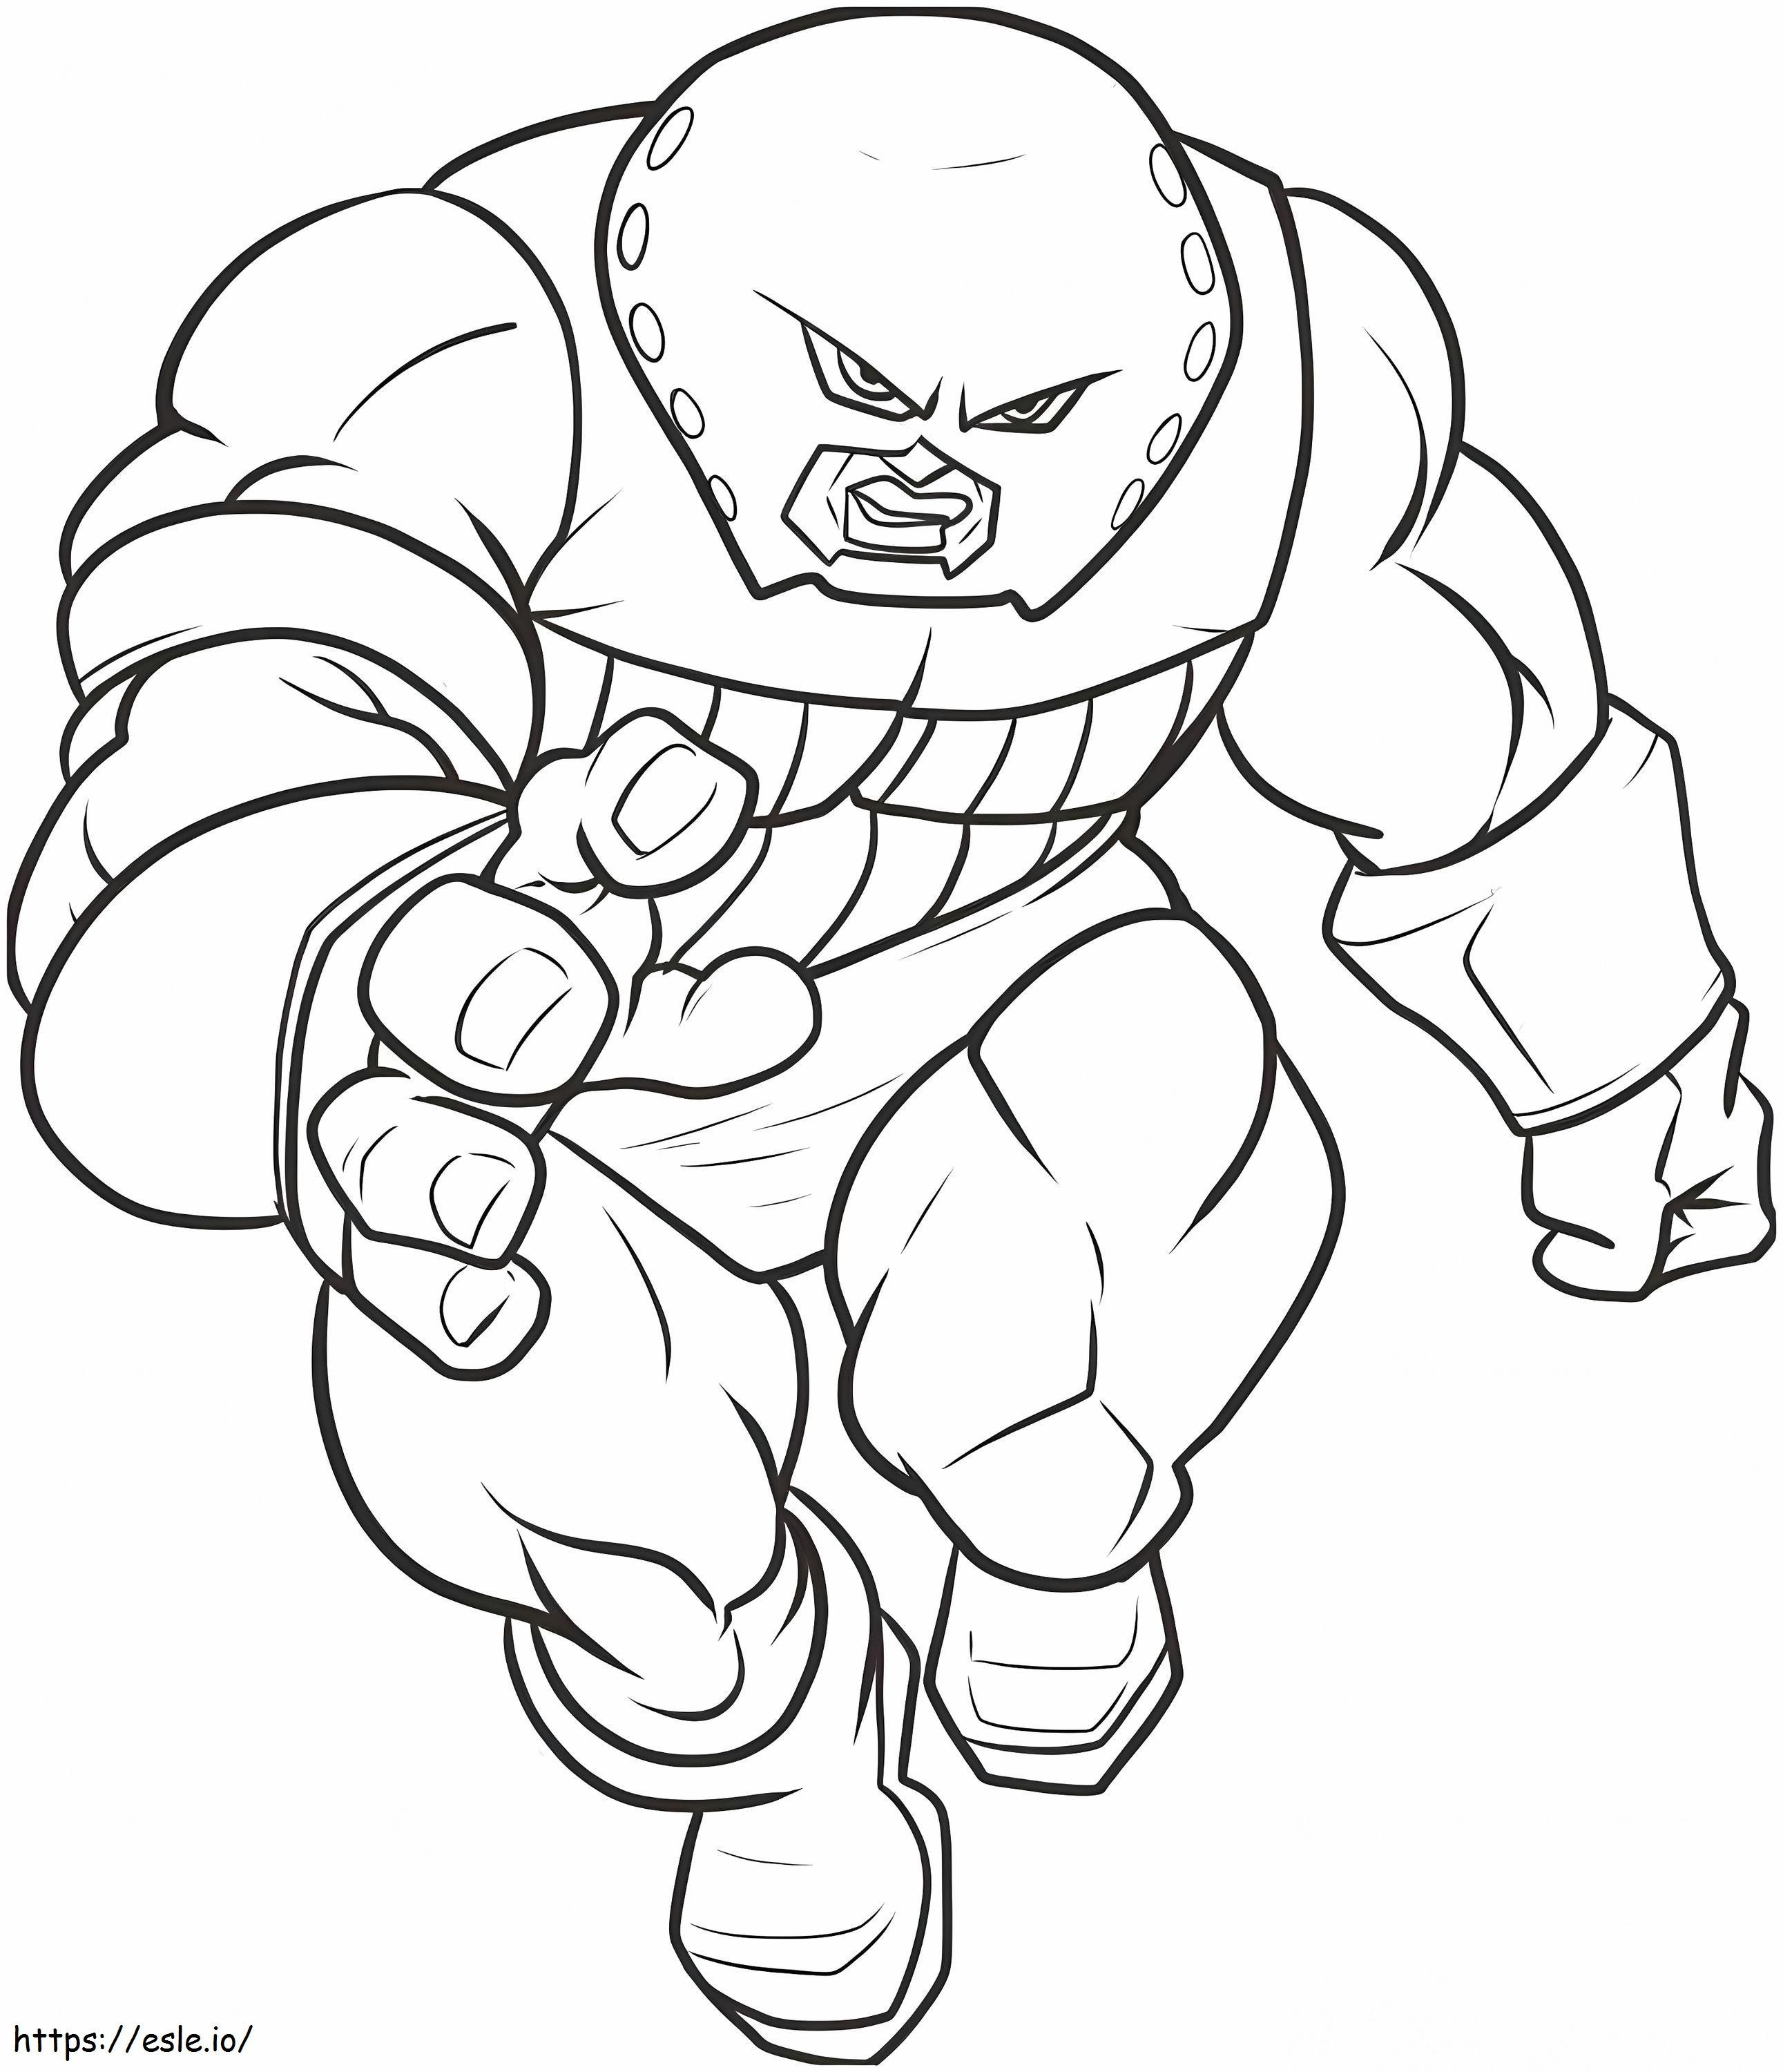 1544839187 Tekening Kleurboek Verbazingwekkend hoe je Juggernaut stap voor stap tekent Marvel Characters Of Drawing Coloring Book kleurplaat kleurplaat